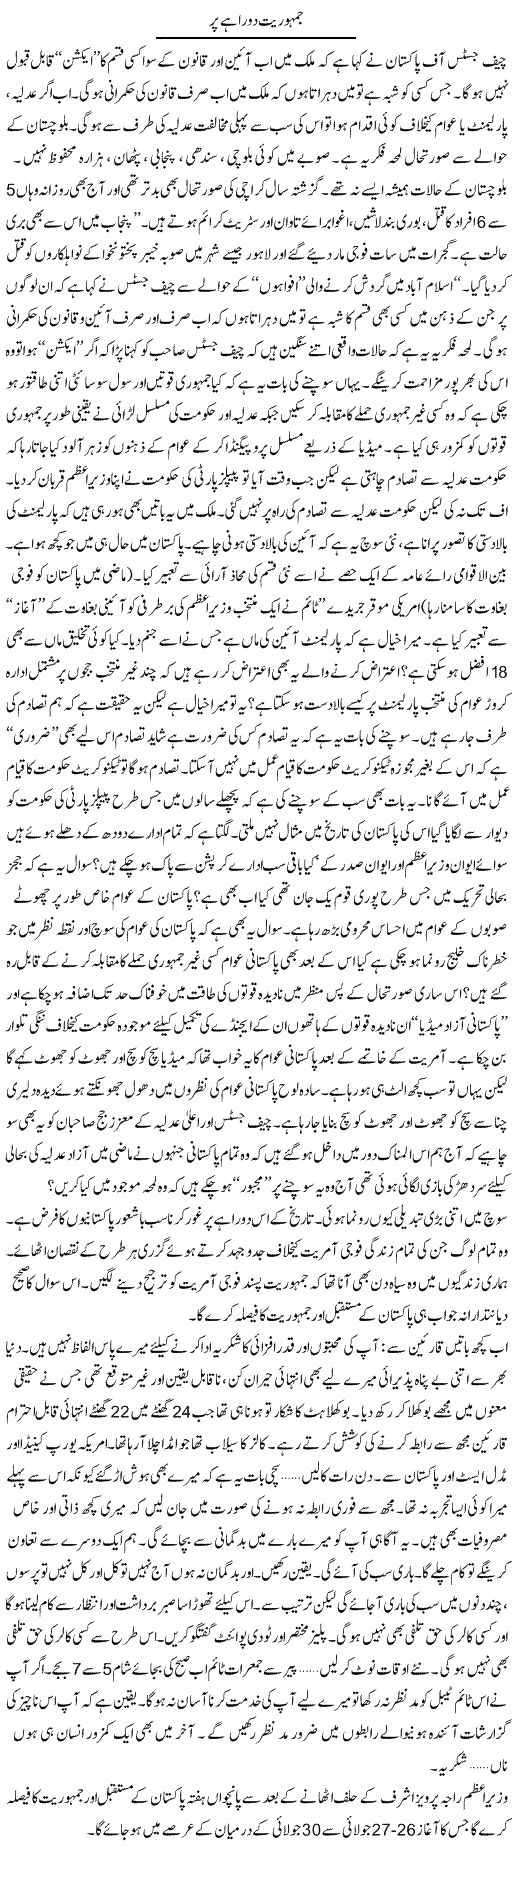 Pakistani Democracy Express Column Zamurd Naqvi 16 July 2012